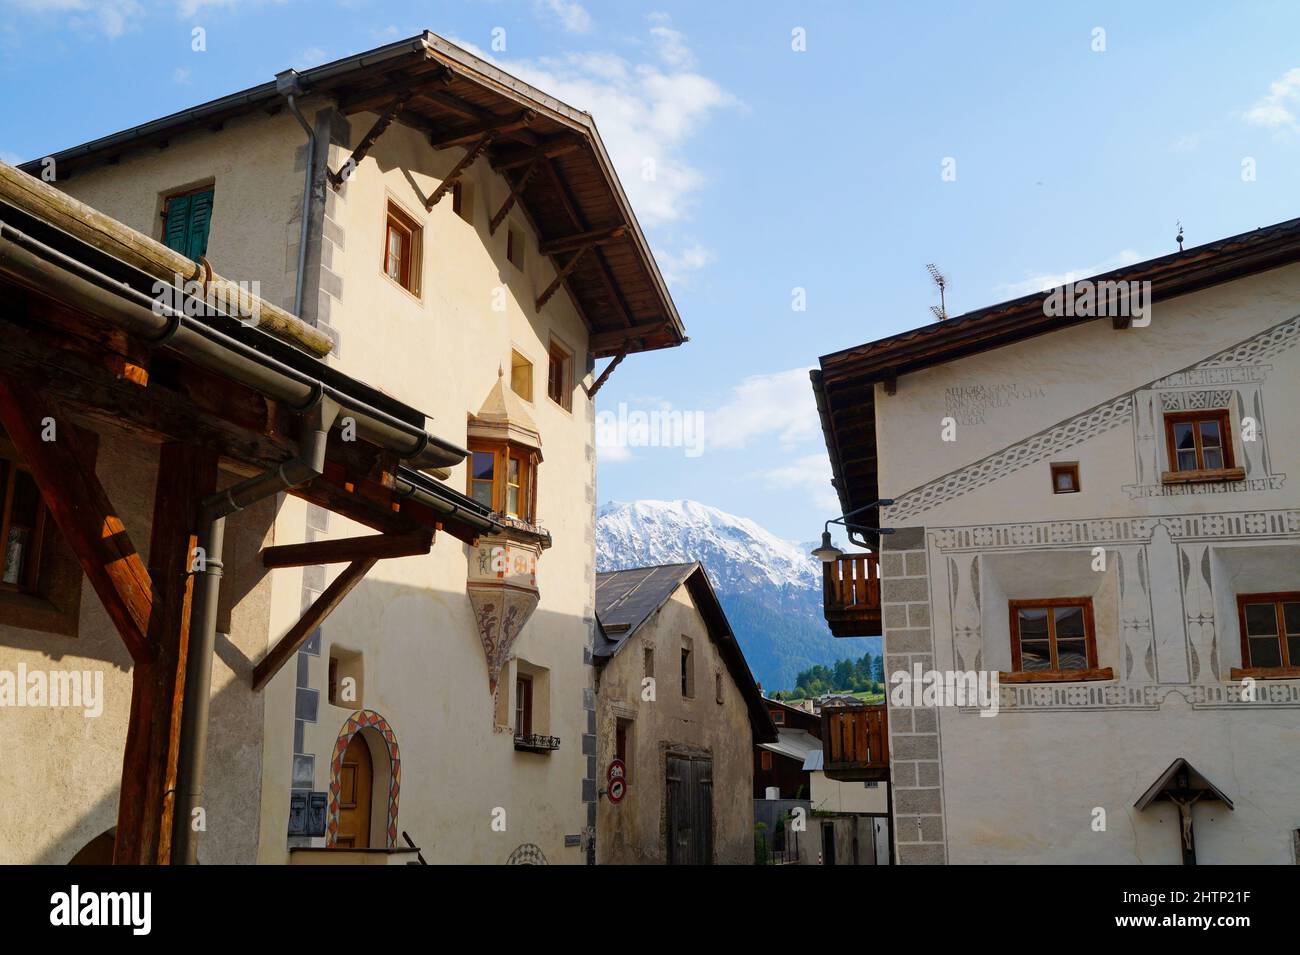 Rues étroites pittoresques de Muestair, région Engiadina Bassa / Val Muestair dans le canton suisse Graubuenden Banque D'Images